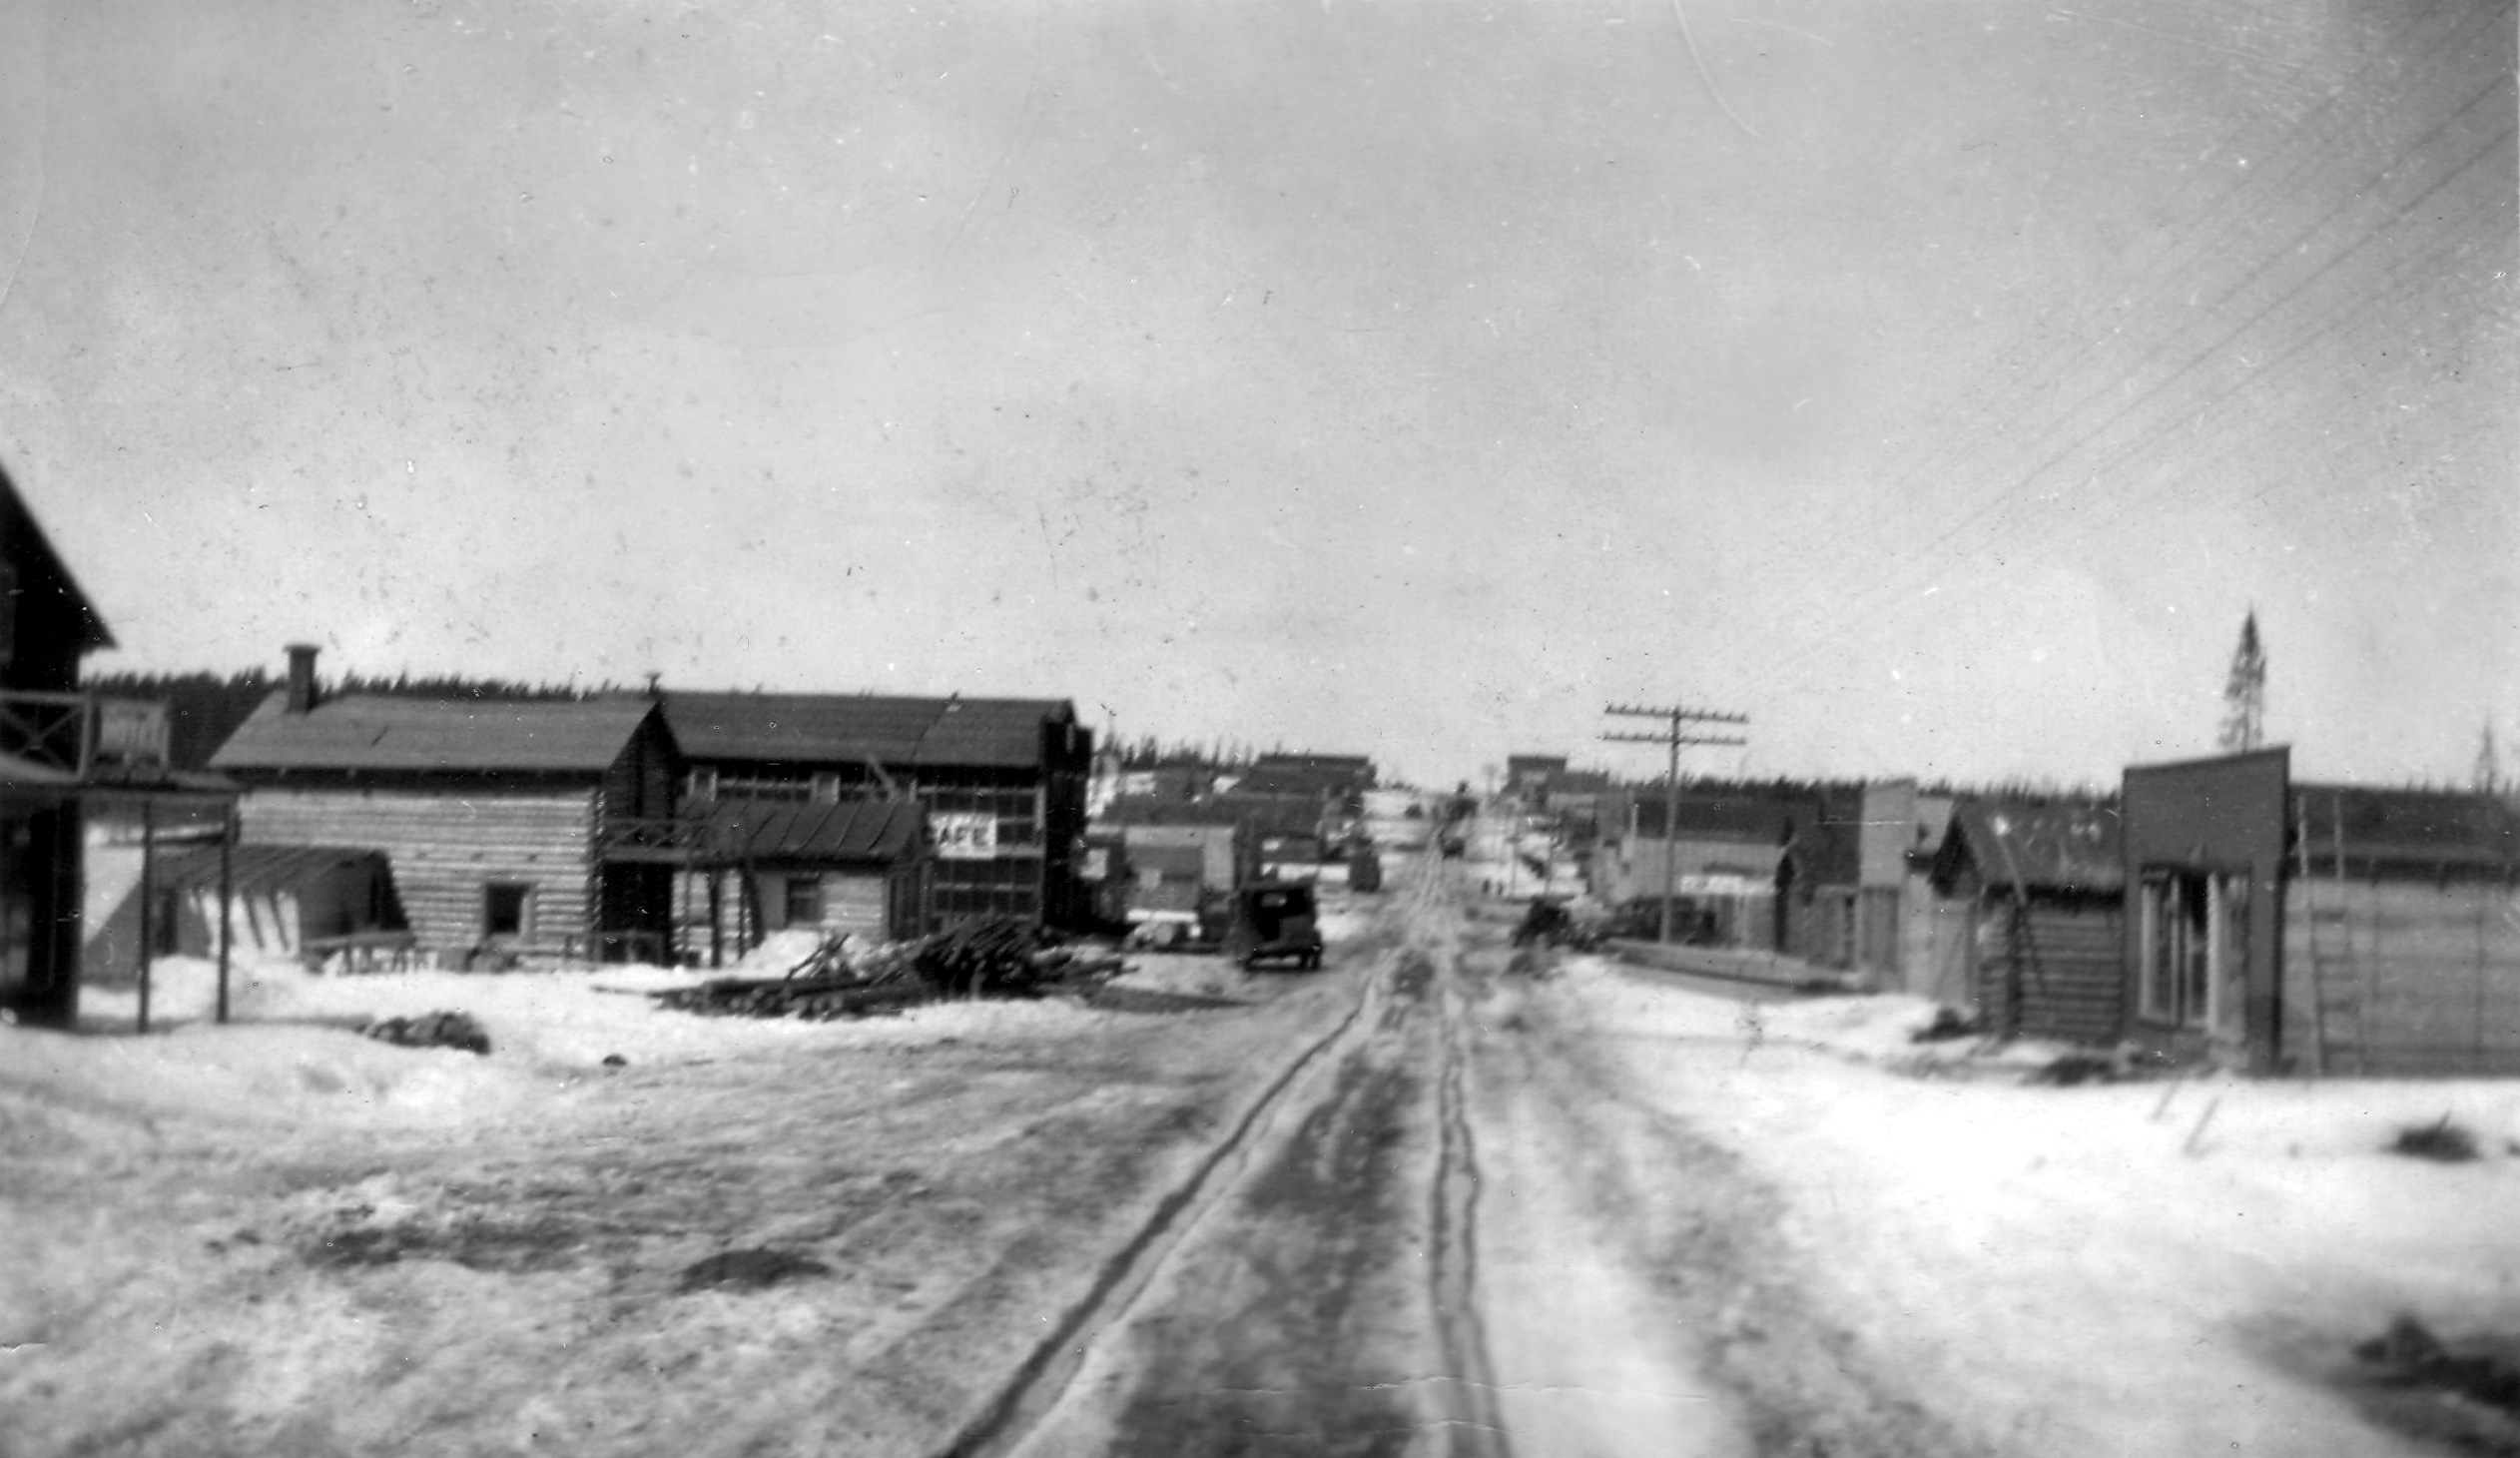 Photographie en noir et blanc d’une route en hiver bordée de bâtiments de planches ou en bois rond. Vu la circulation dans la neige, des roulières sont visibles au centre. 